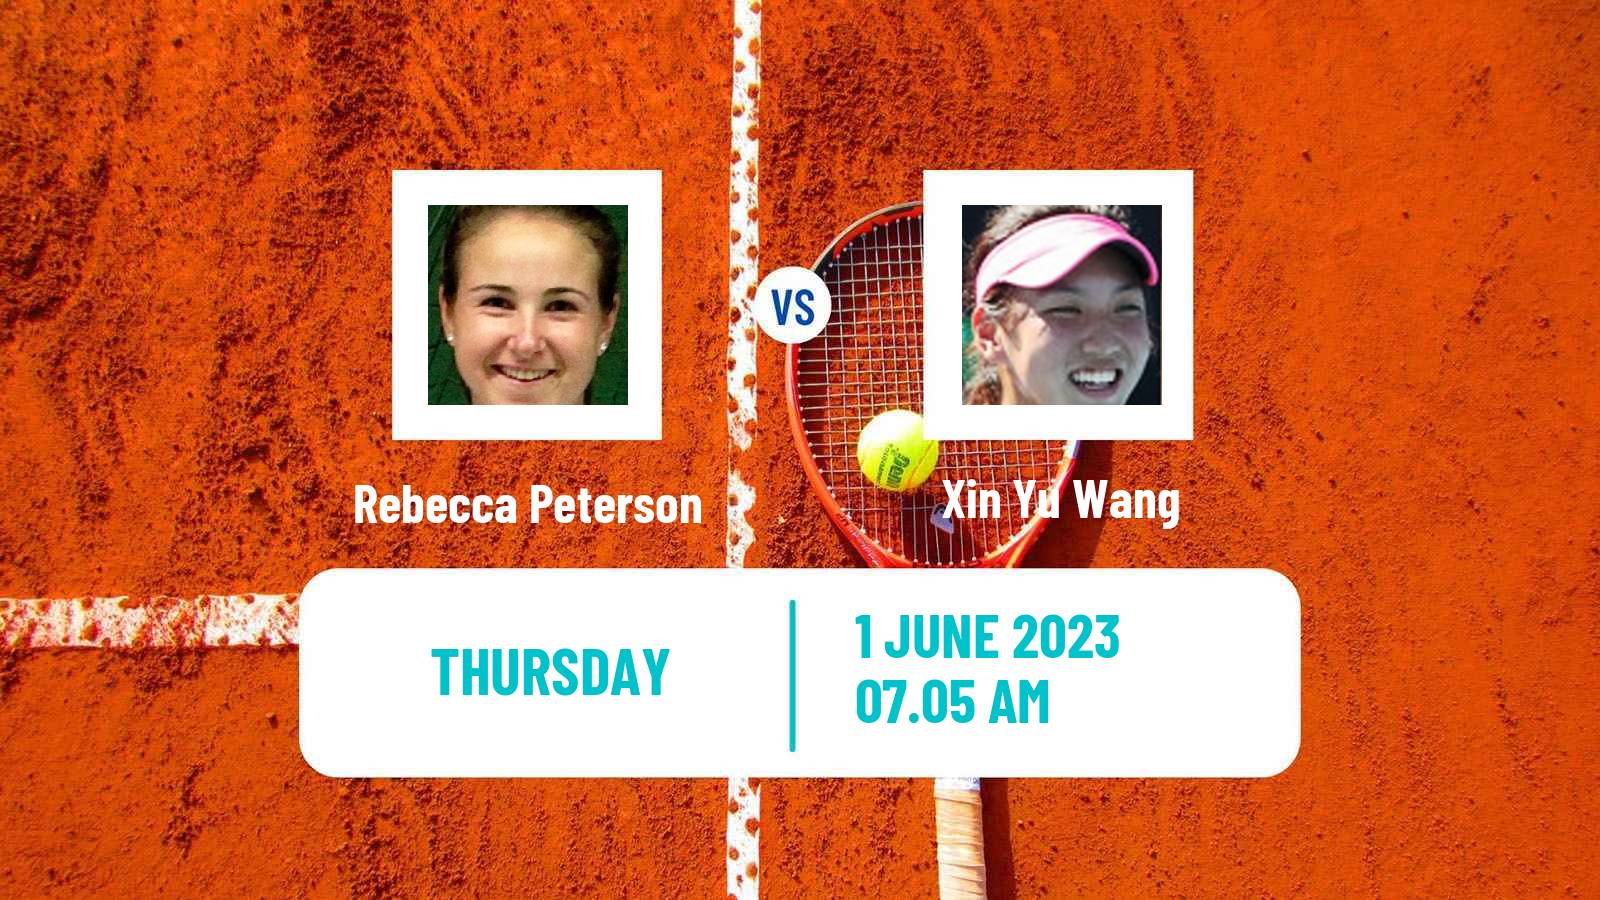 Tennis WTA Roland Garros Rebecca Peterson - Xin Yu Wang